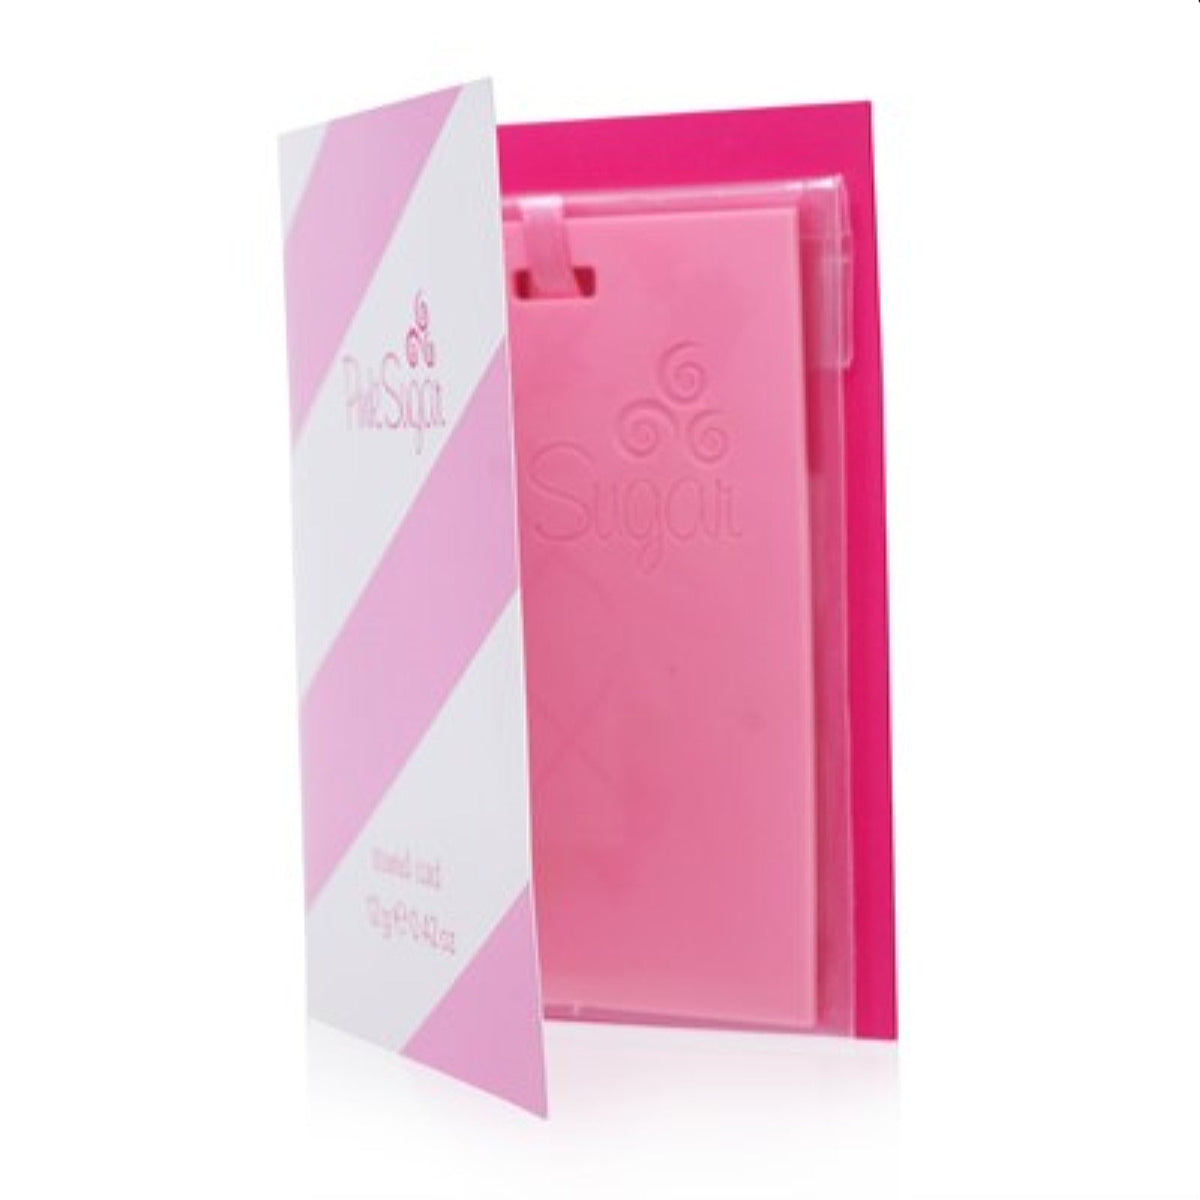 Pink Sugar Aqualina Scented Card 0.42 Oz 12G 2298